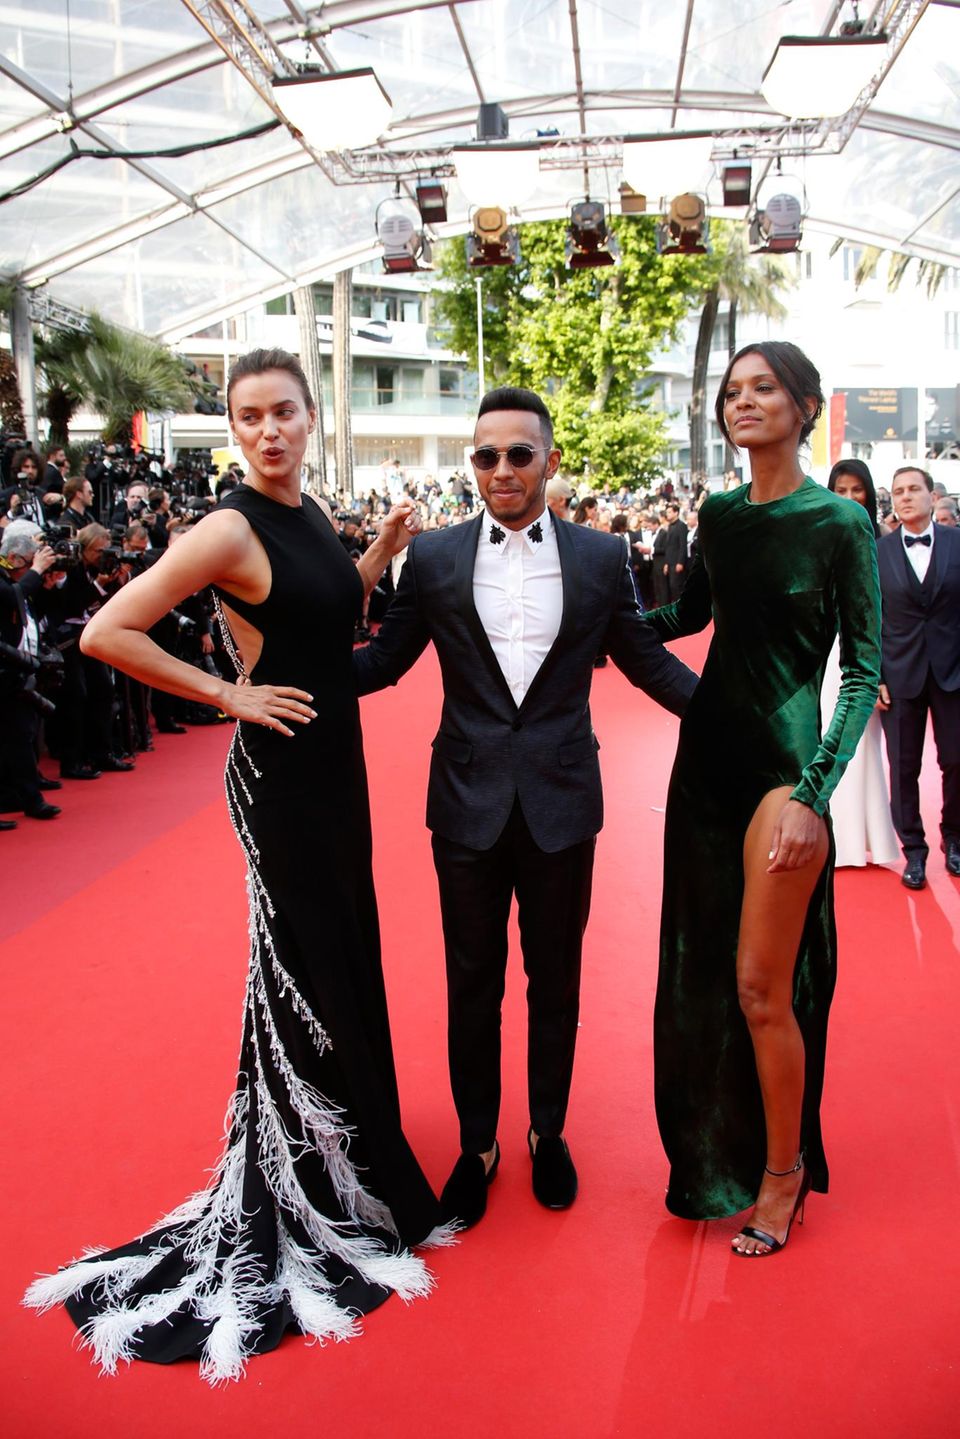 Gleich mit zwei wunderschönen Ladies eingerahmt, stellt sich Formel 1 Rennfahrer Lewis Hamilton den Fotografen.